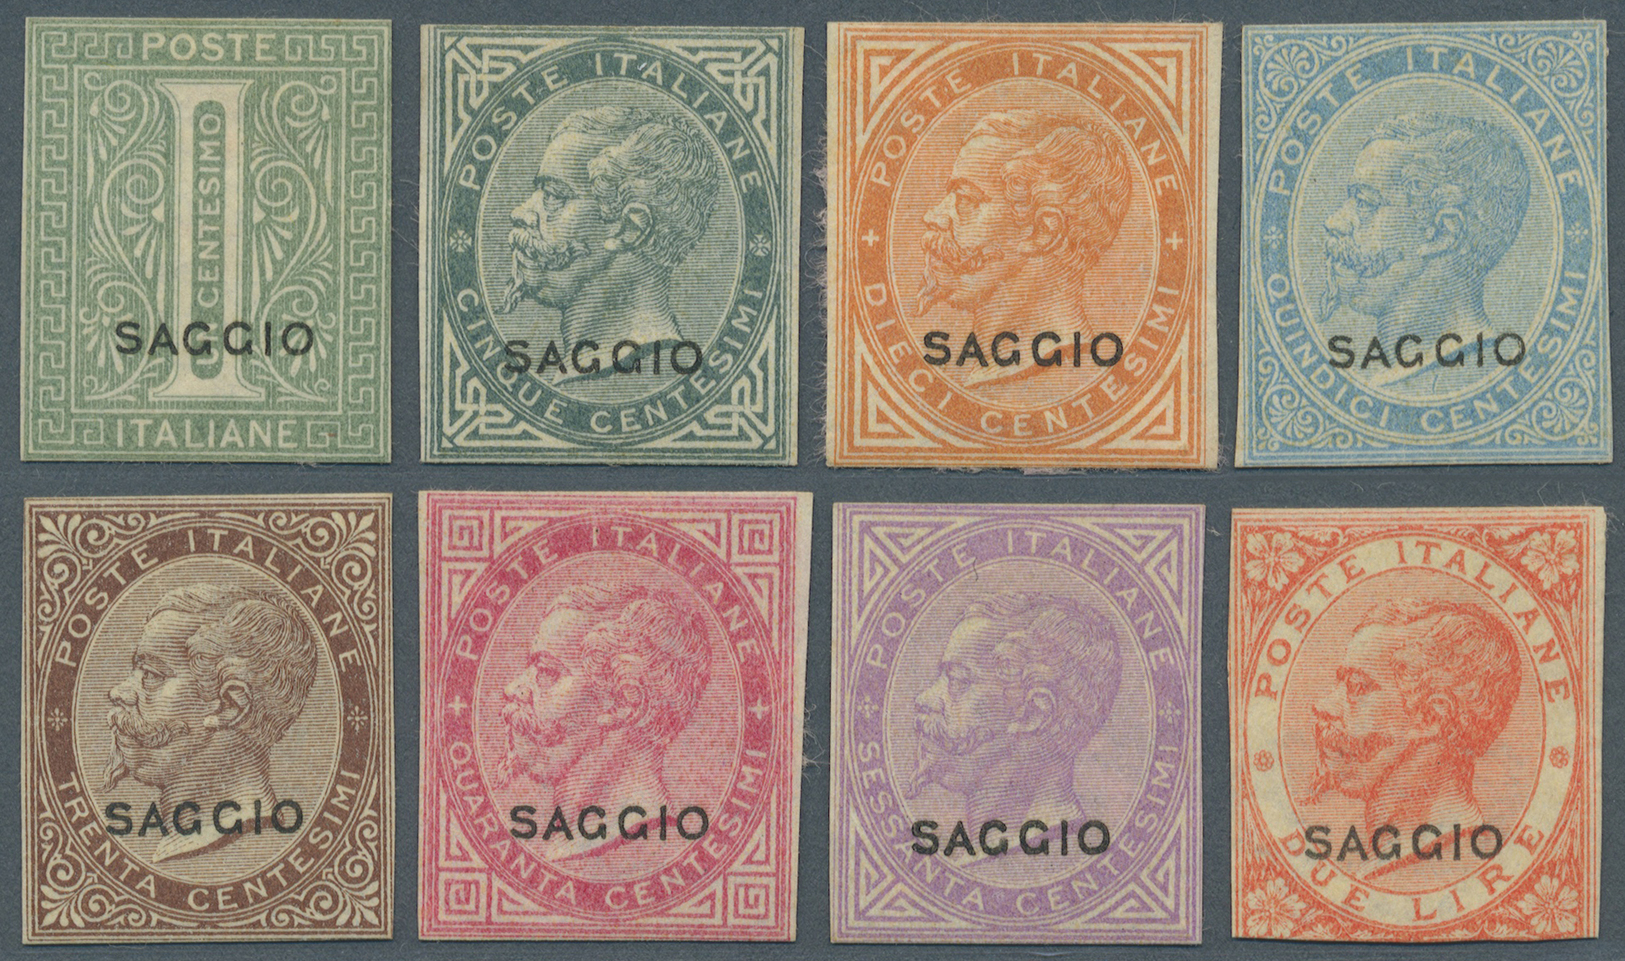 (*) Italien: 1863, Viktor Emanuel II. 5 C. Bis 2 L. Komplett (7 Werte) Sowie 1 C. Ziffer Alle Eng Geschnitten Mit - Marcophilia